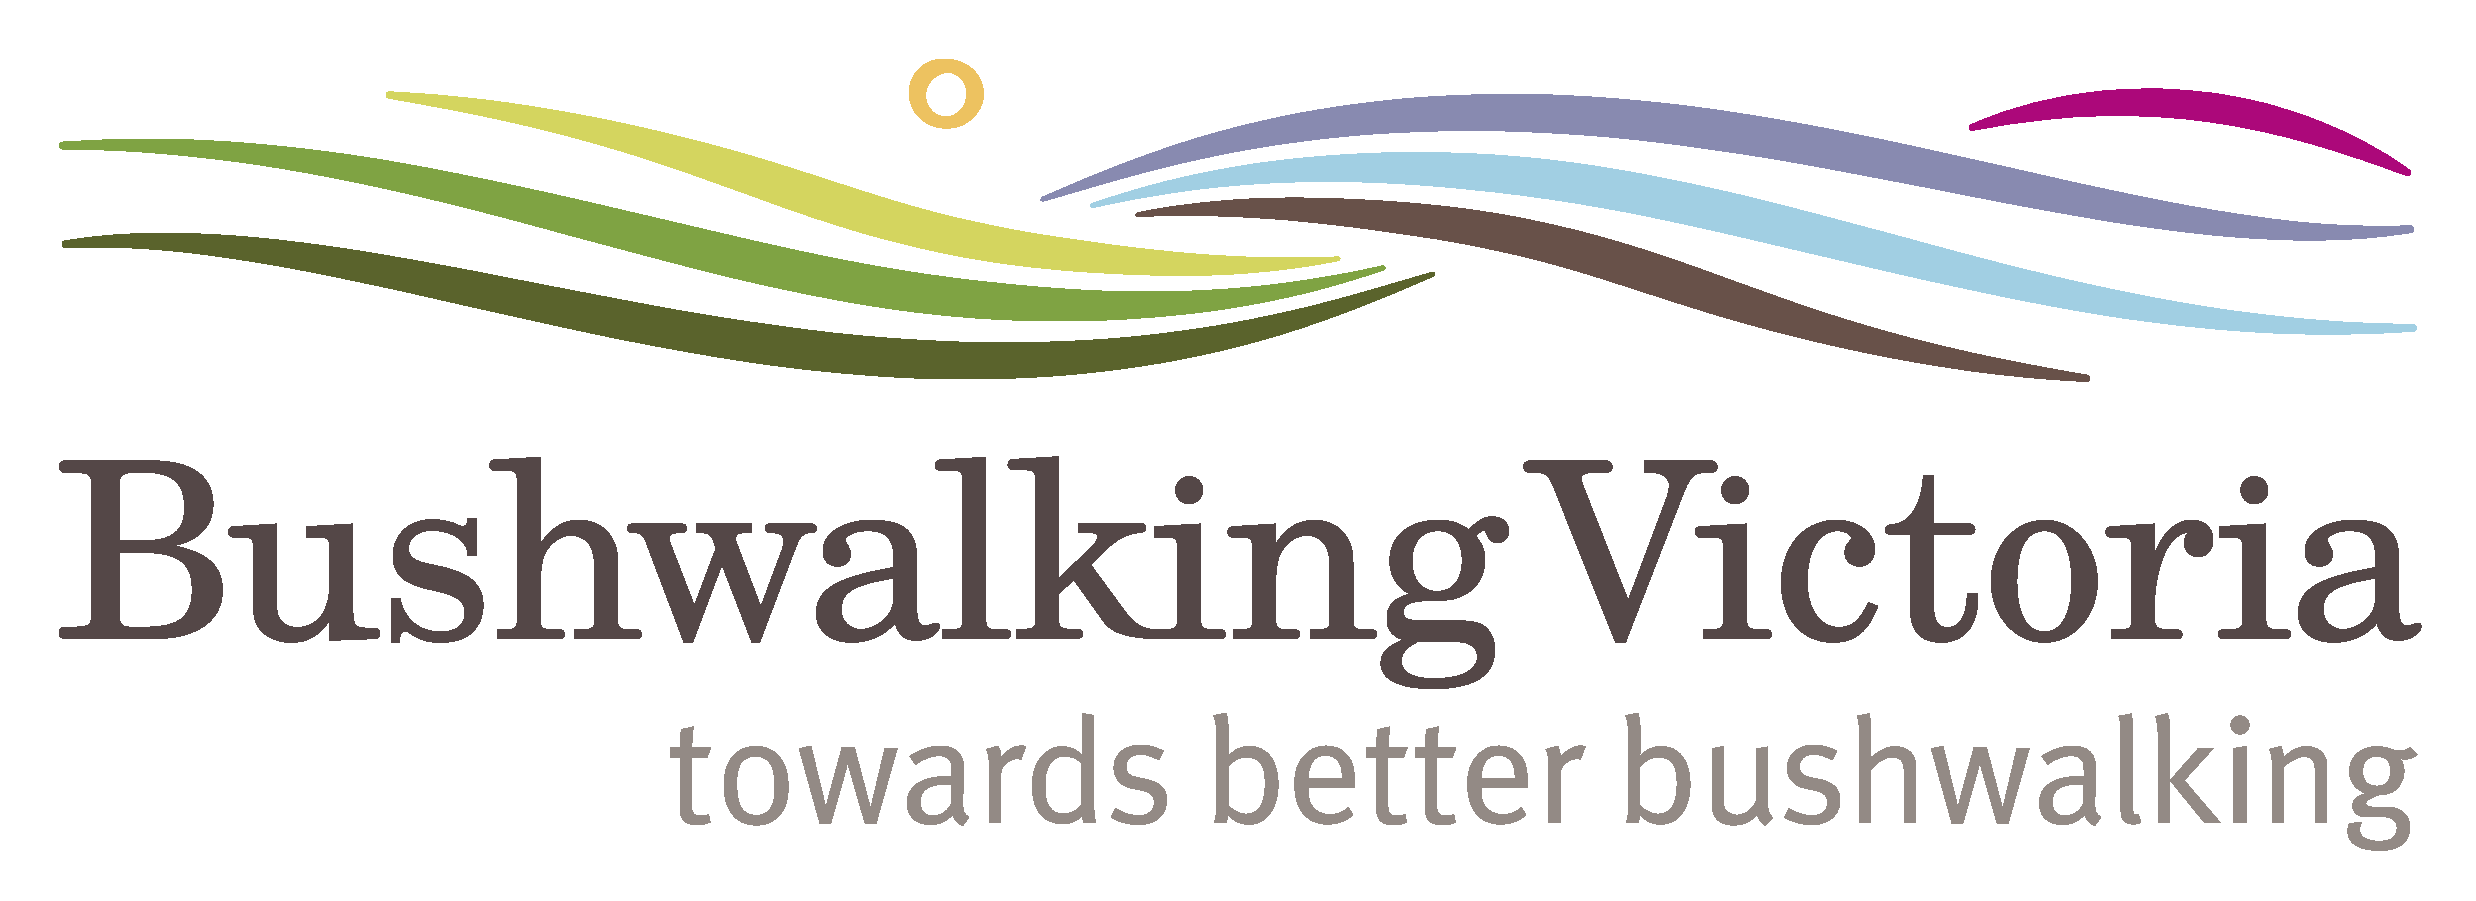 Bushwalking Vic logo with tagline 2 for websites